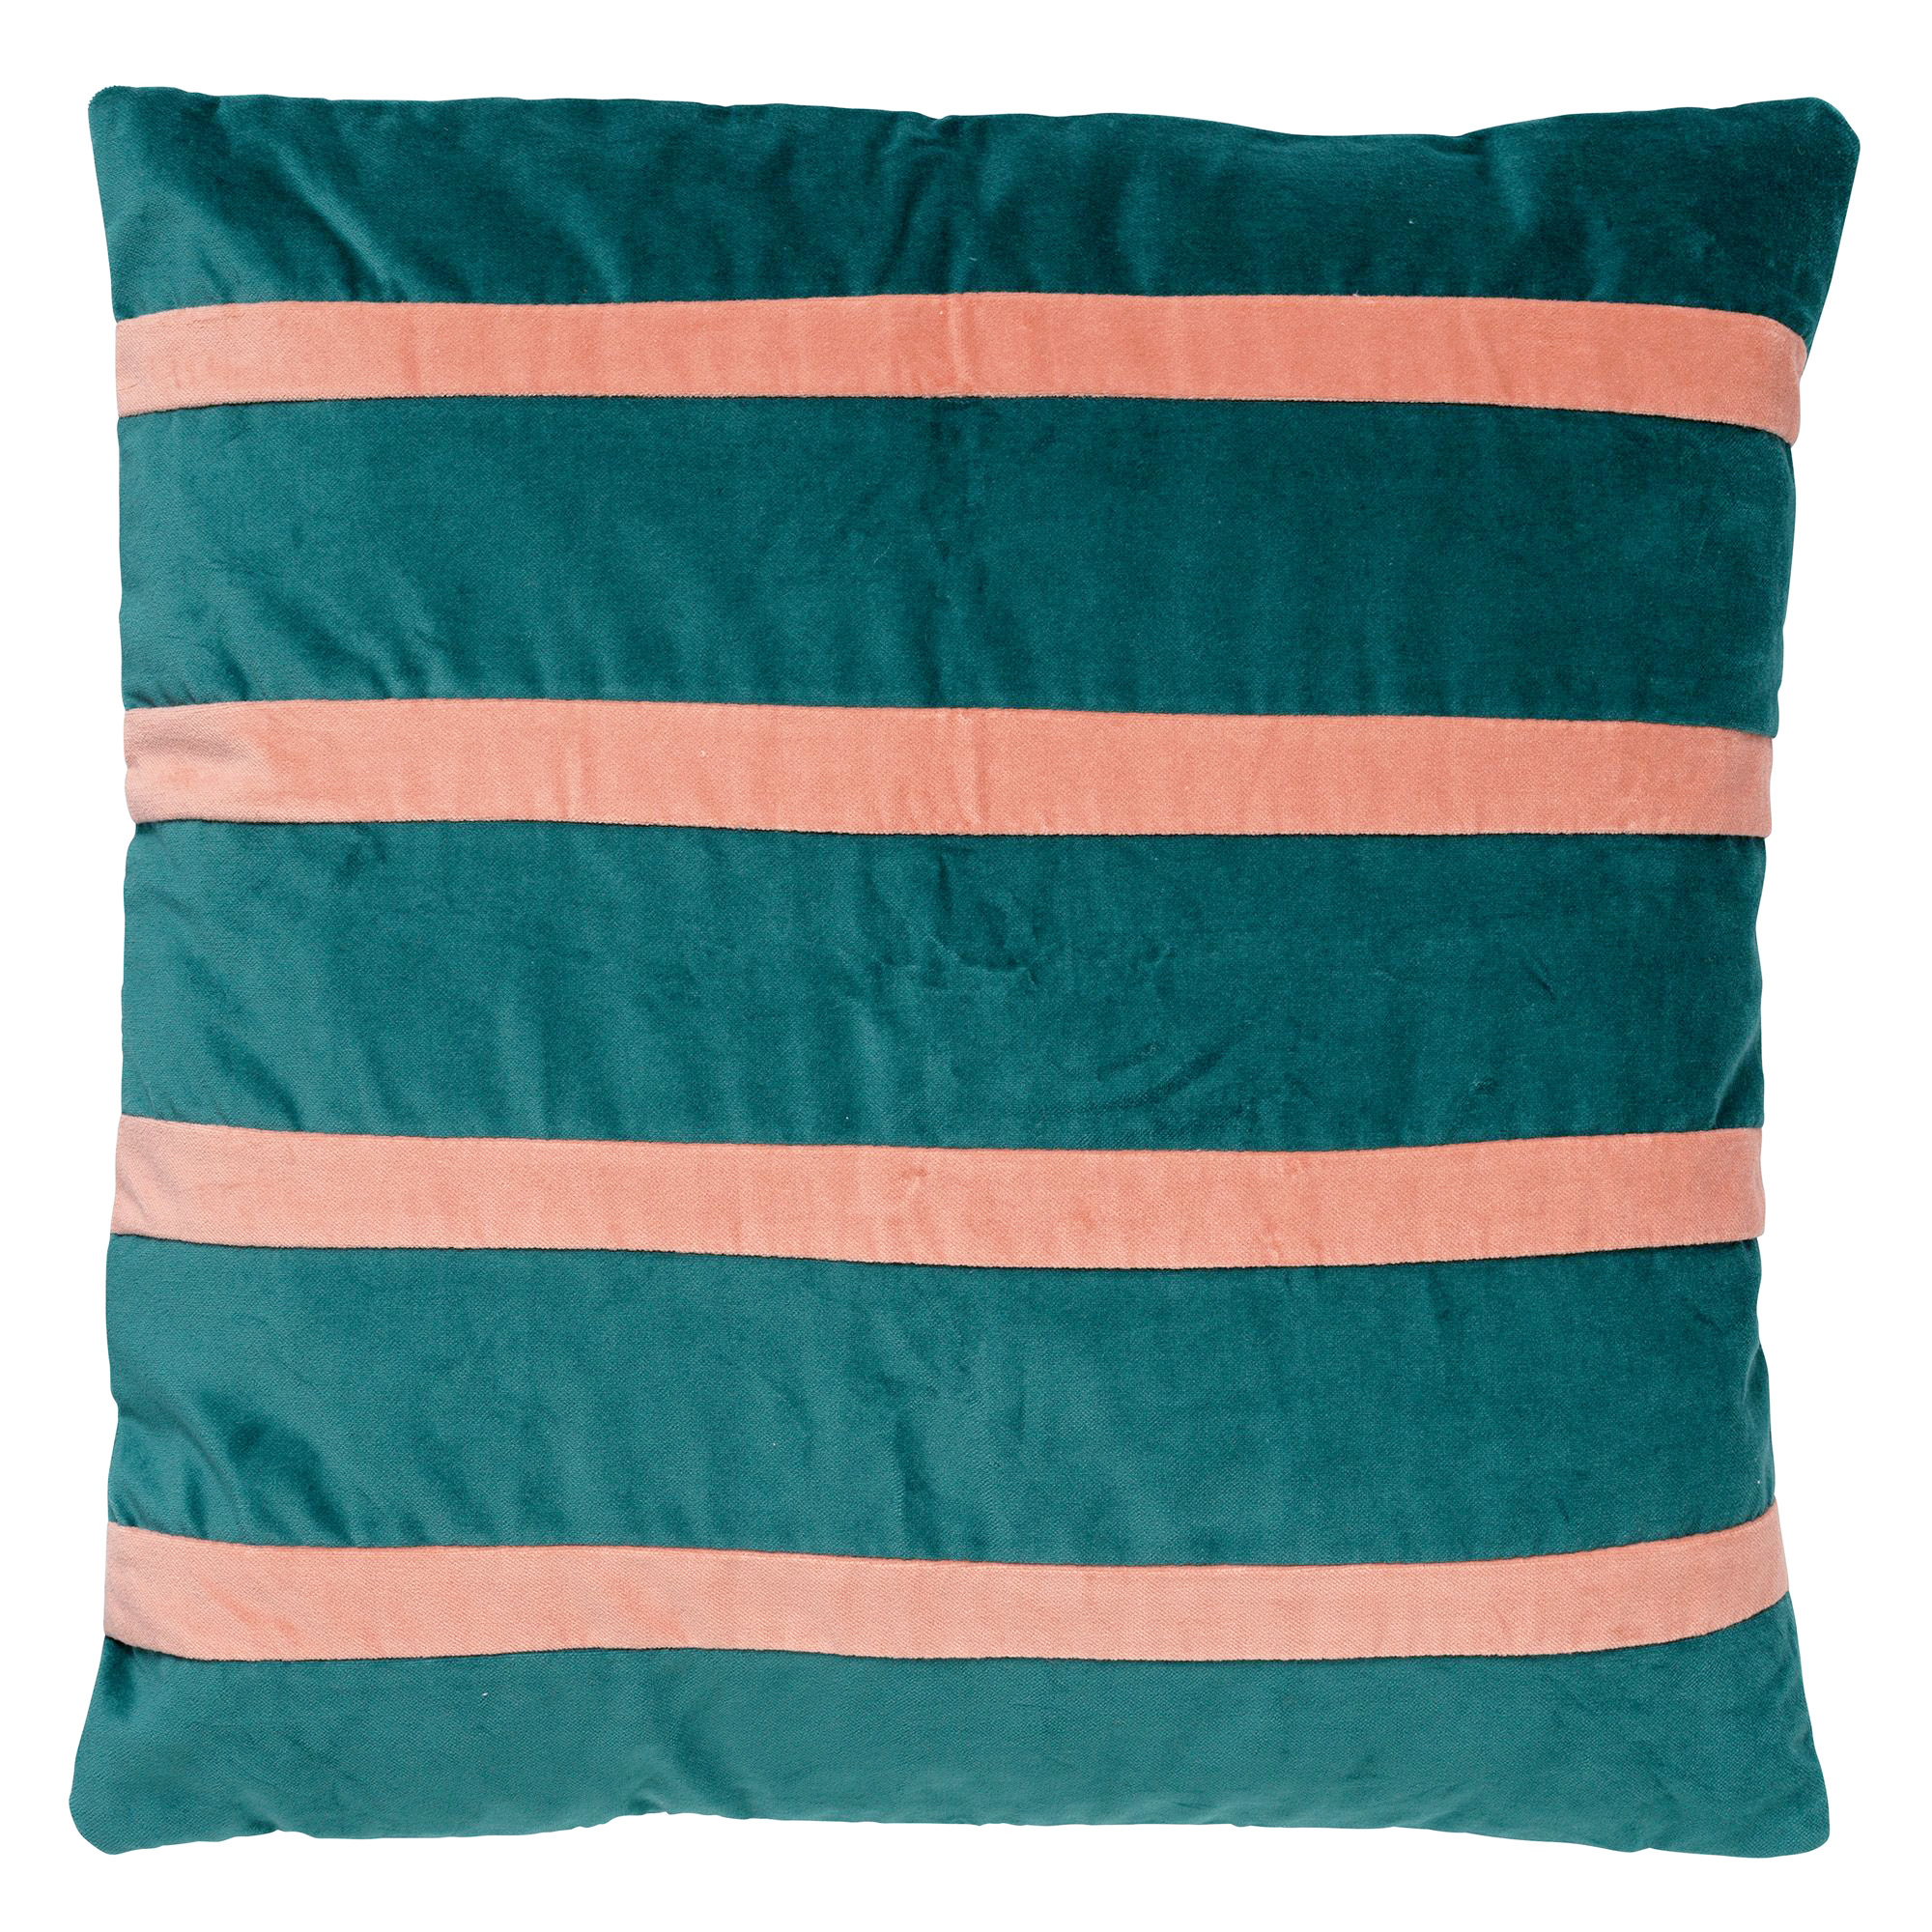 PEMM - Sierkussen velvet 45x45 cm - sagebrush green - groen - roze strepen - color blocking